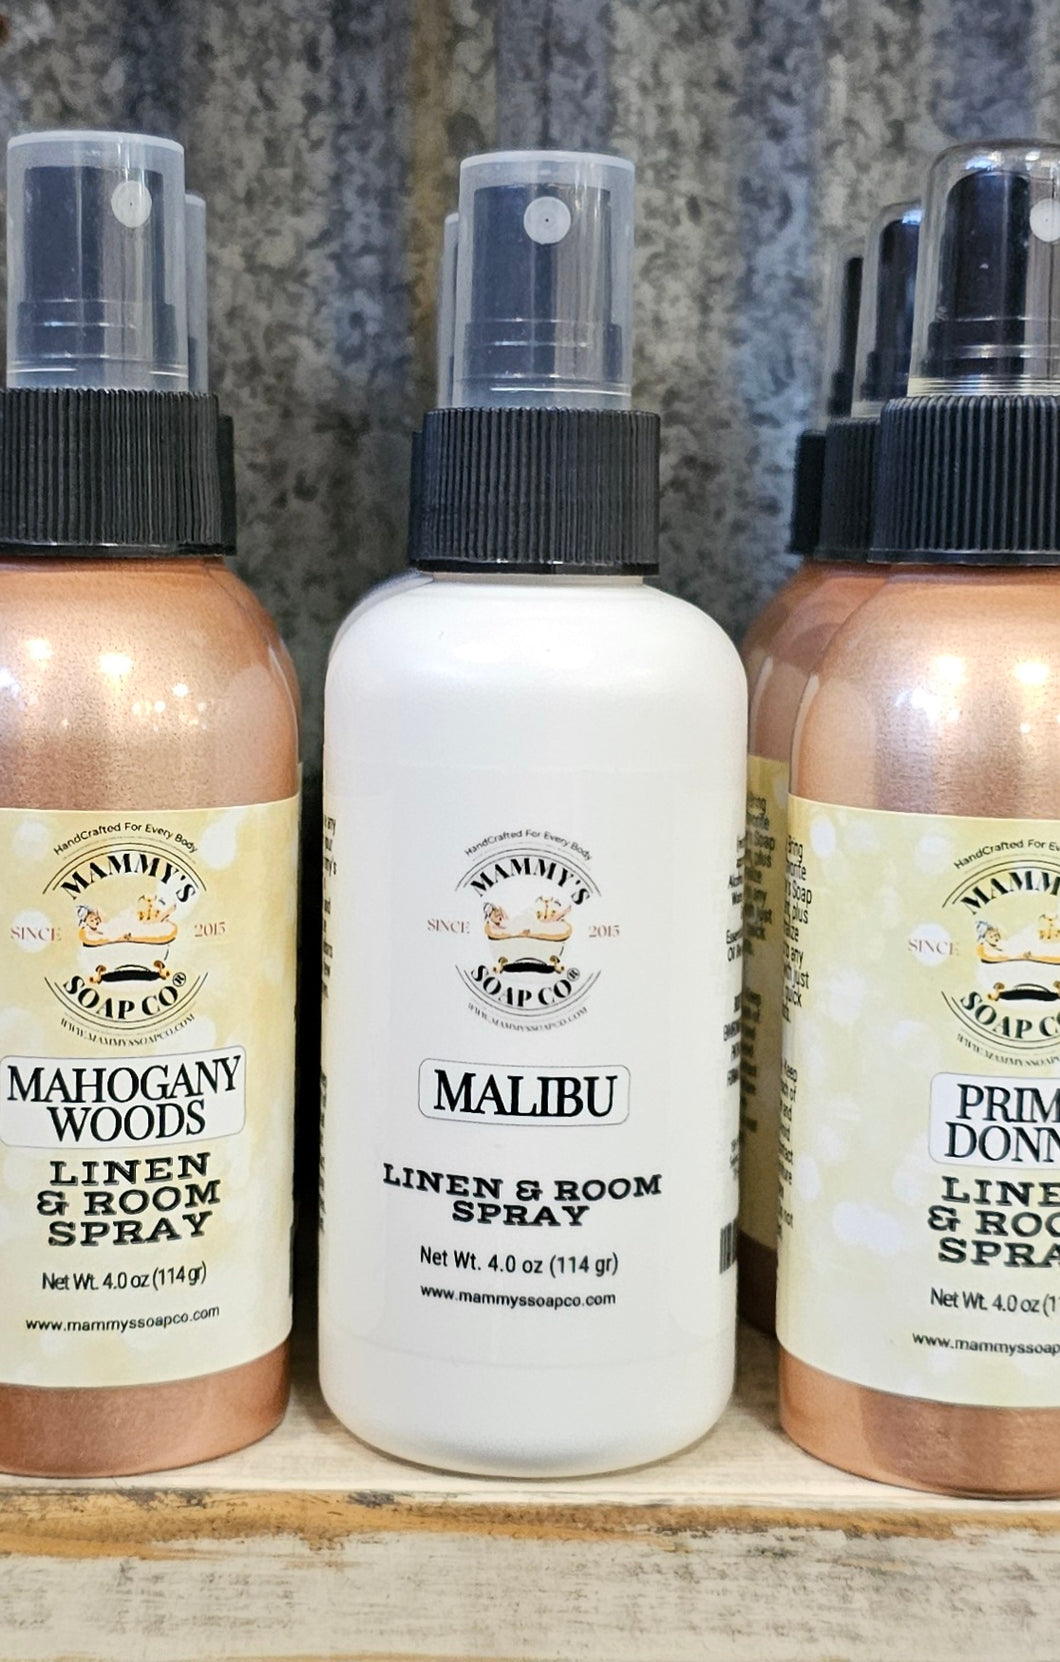 Malibu Linen & Room Spray